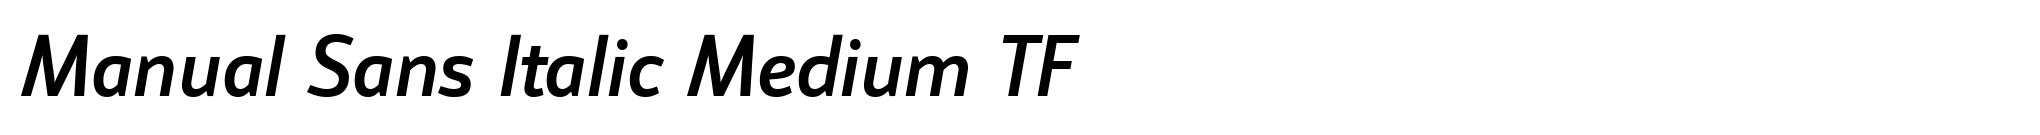 Manual Sans Italic Medium TF image